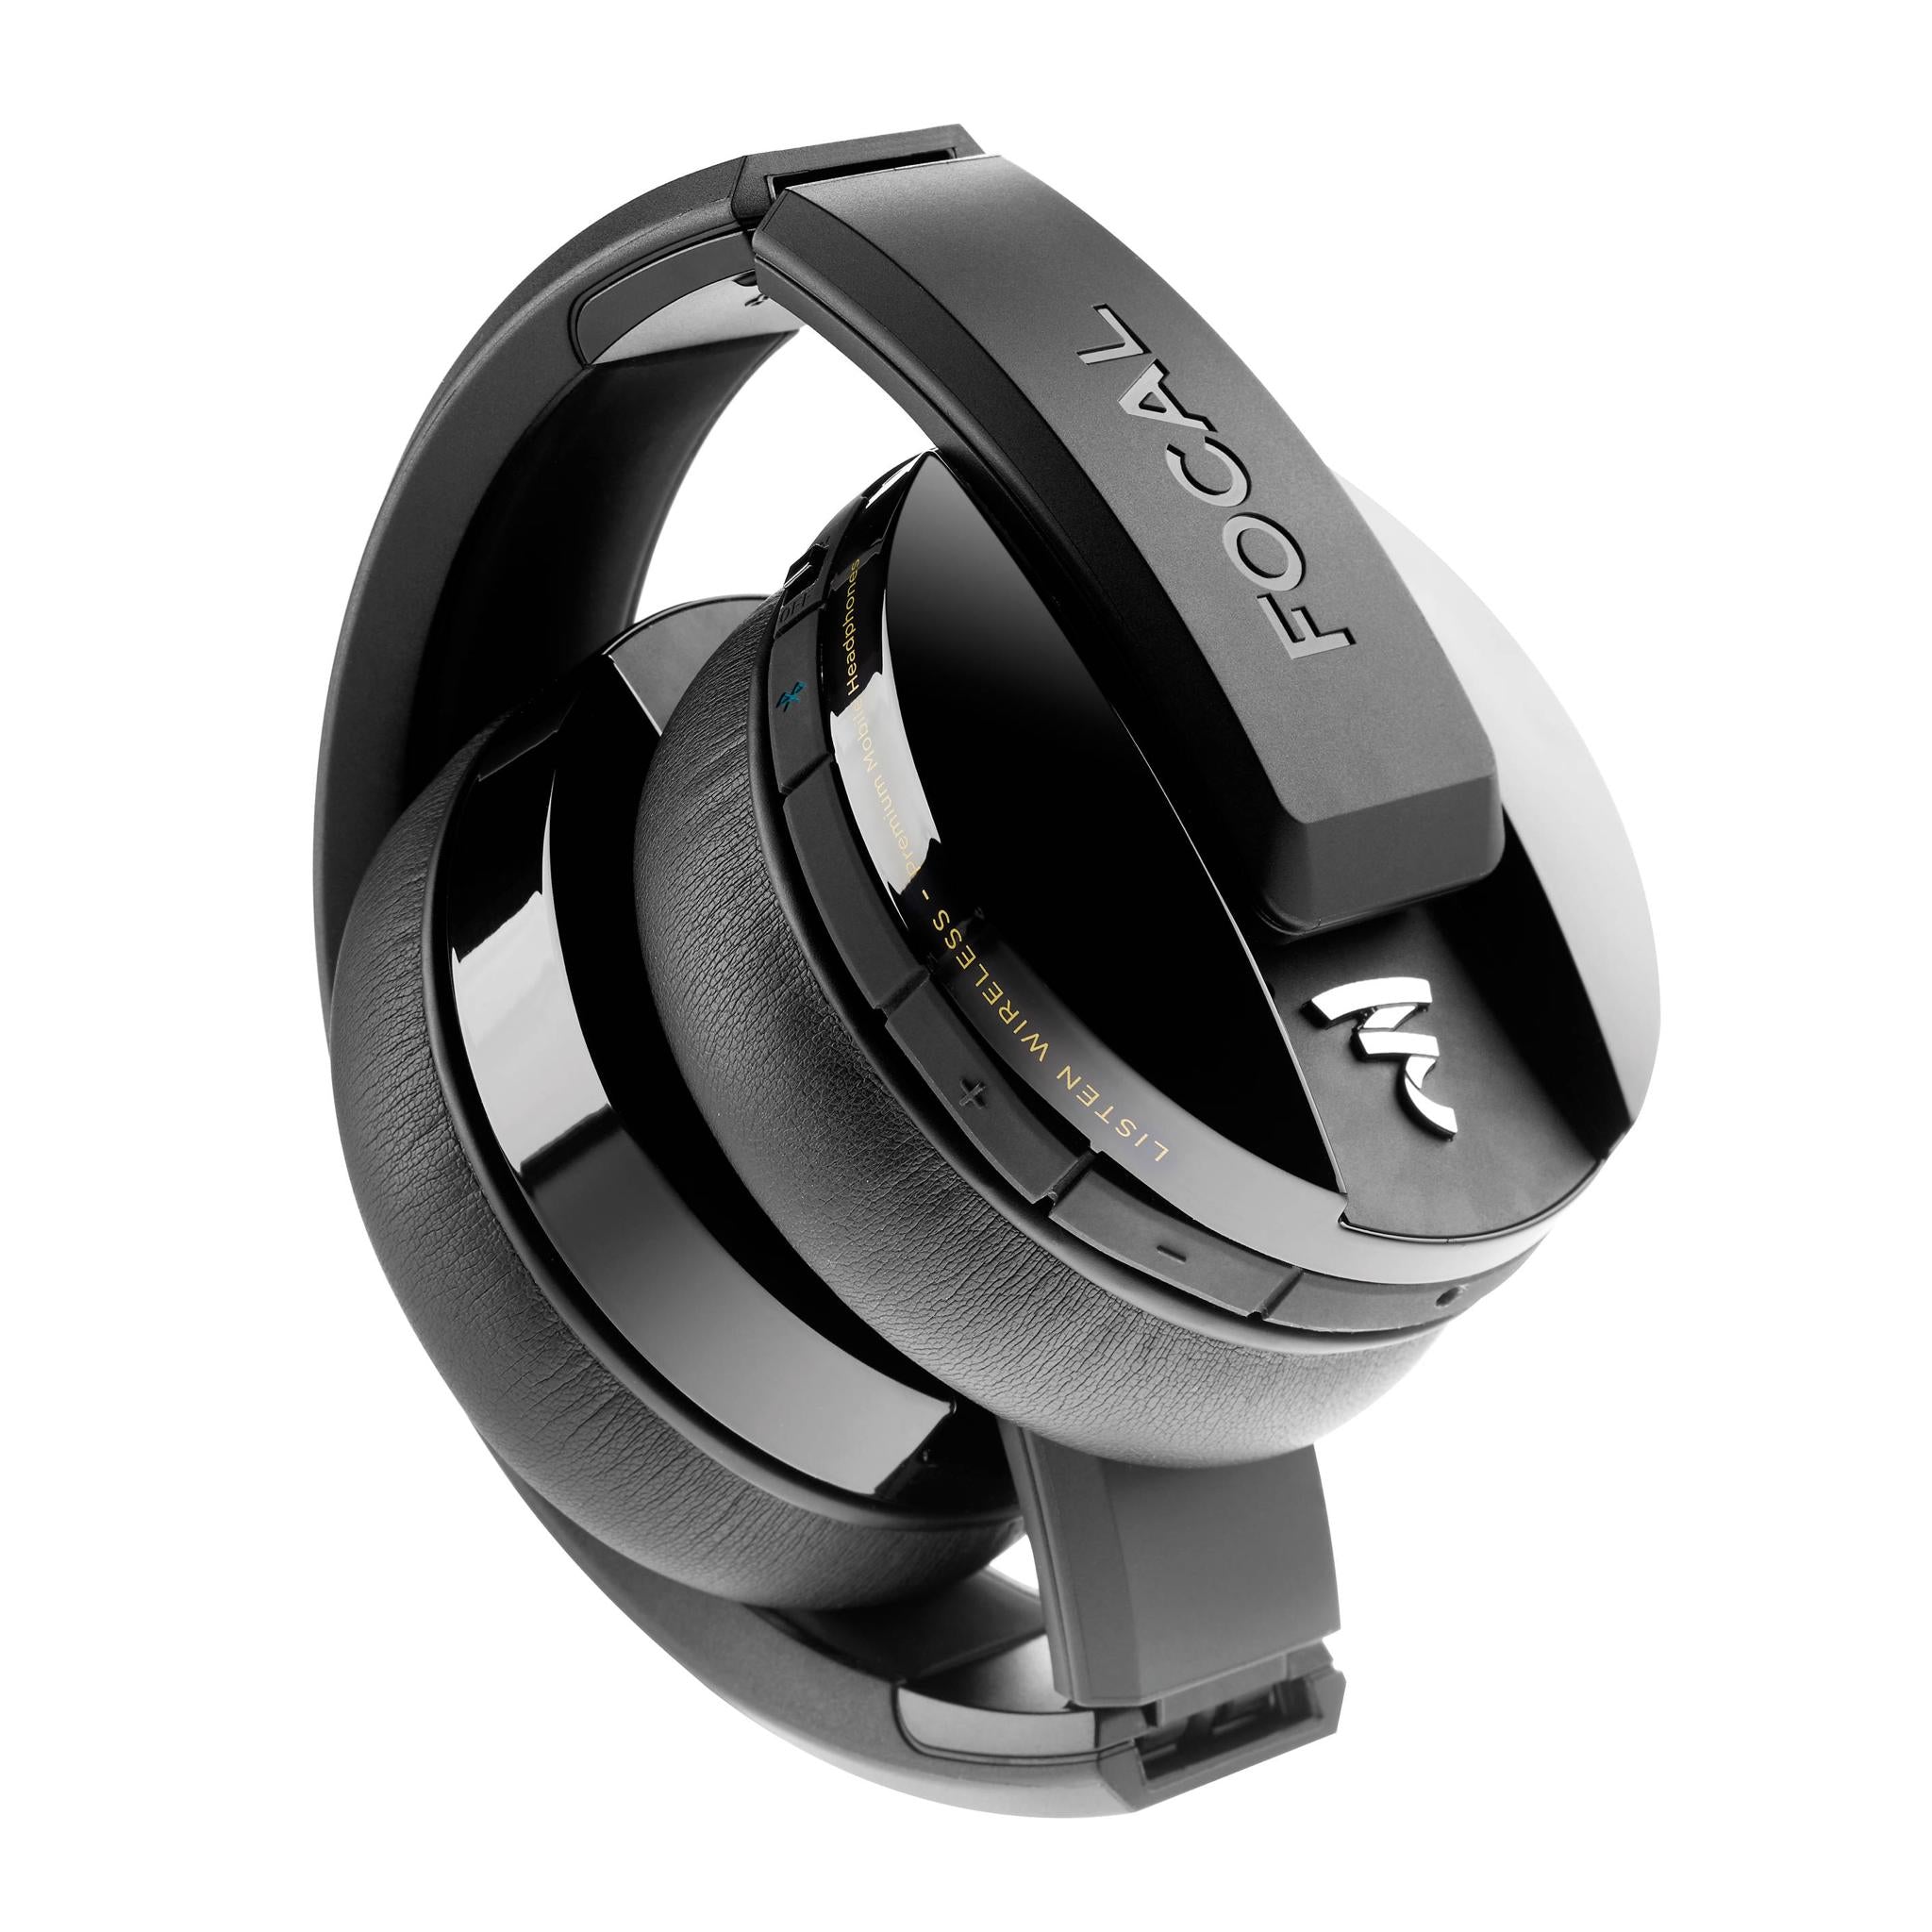 Focal Listen Wireless - Over-Ear Wireless Headphone - AVStore